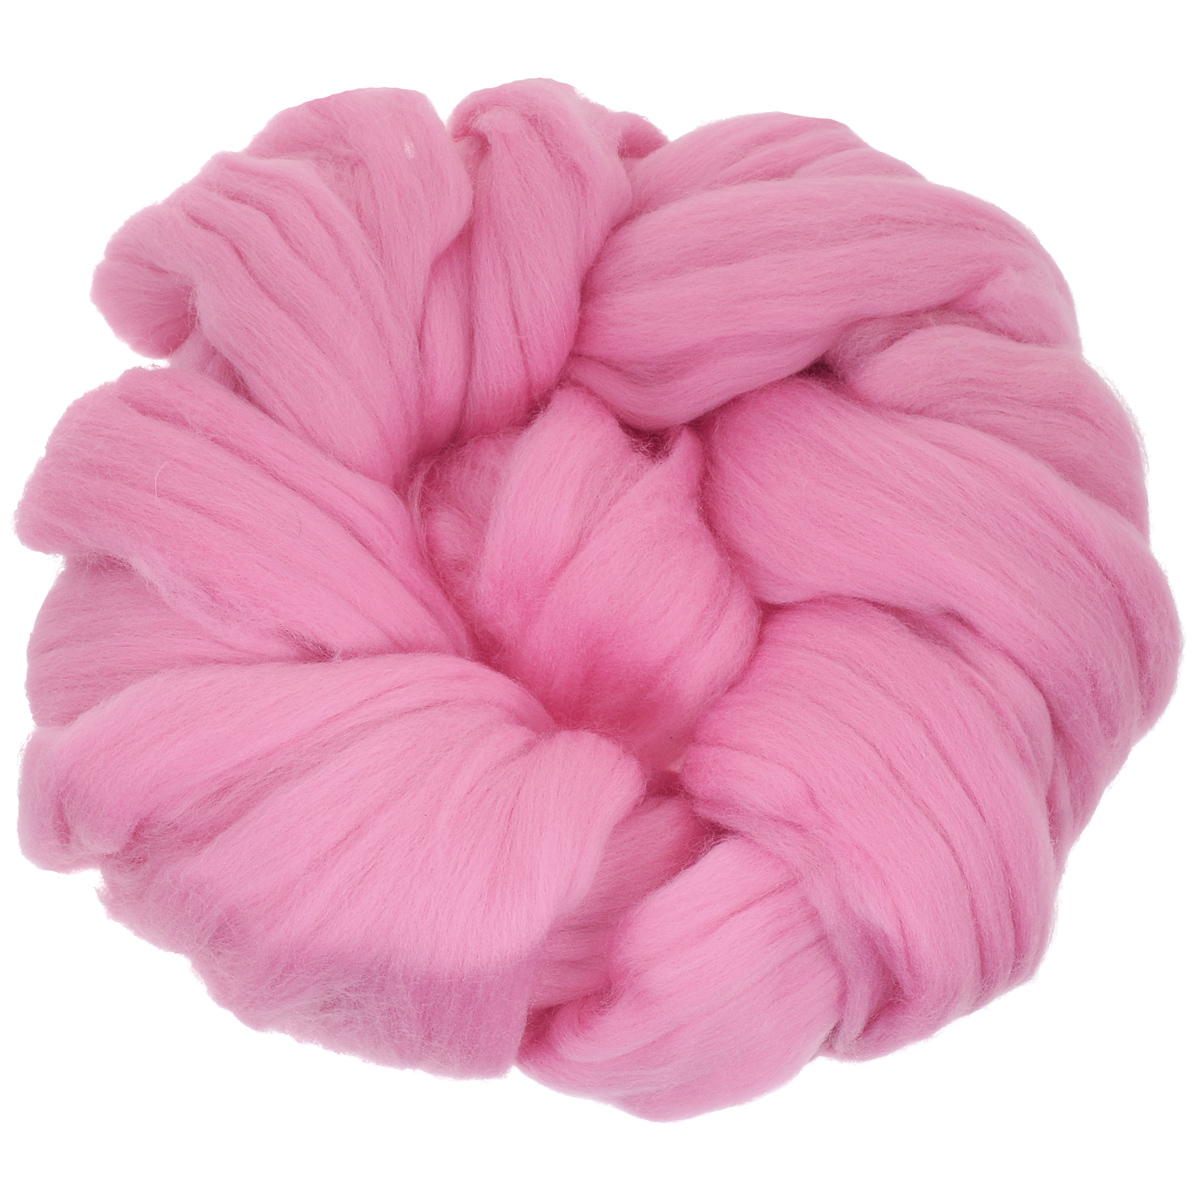 Шерсть для валяния "Астра", тонкая, цвет: розовый (0160), 100 г